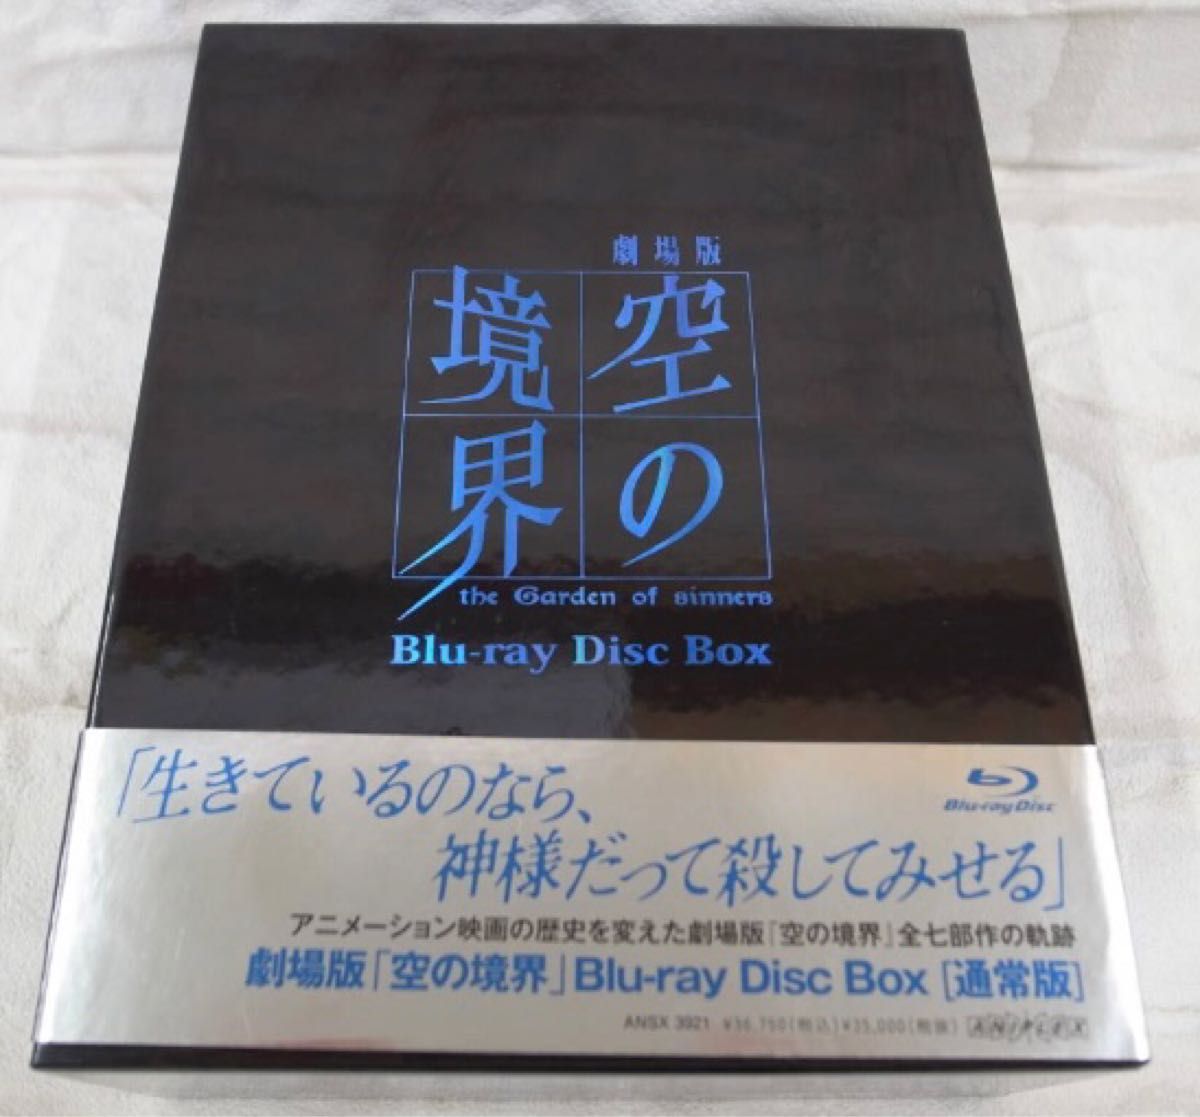 劇場版「空の境界」 Blu-ray Disc Box〈8枚組〉 武内崇 梶浦由記 近藤